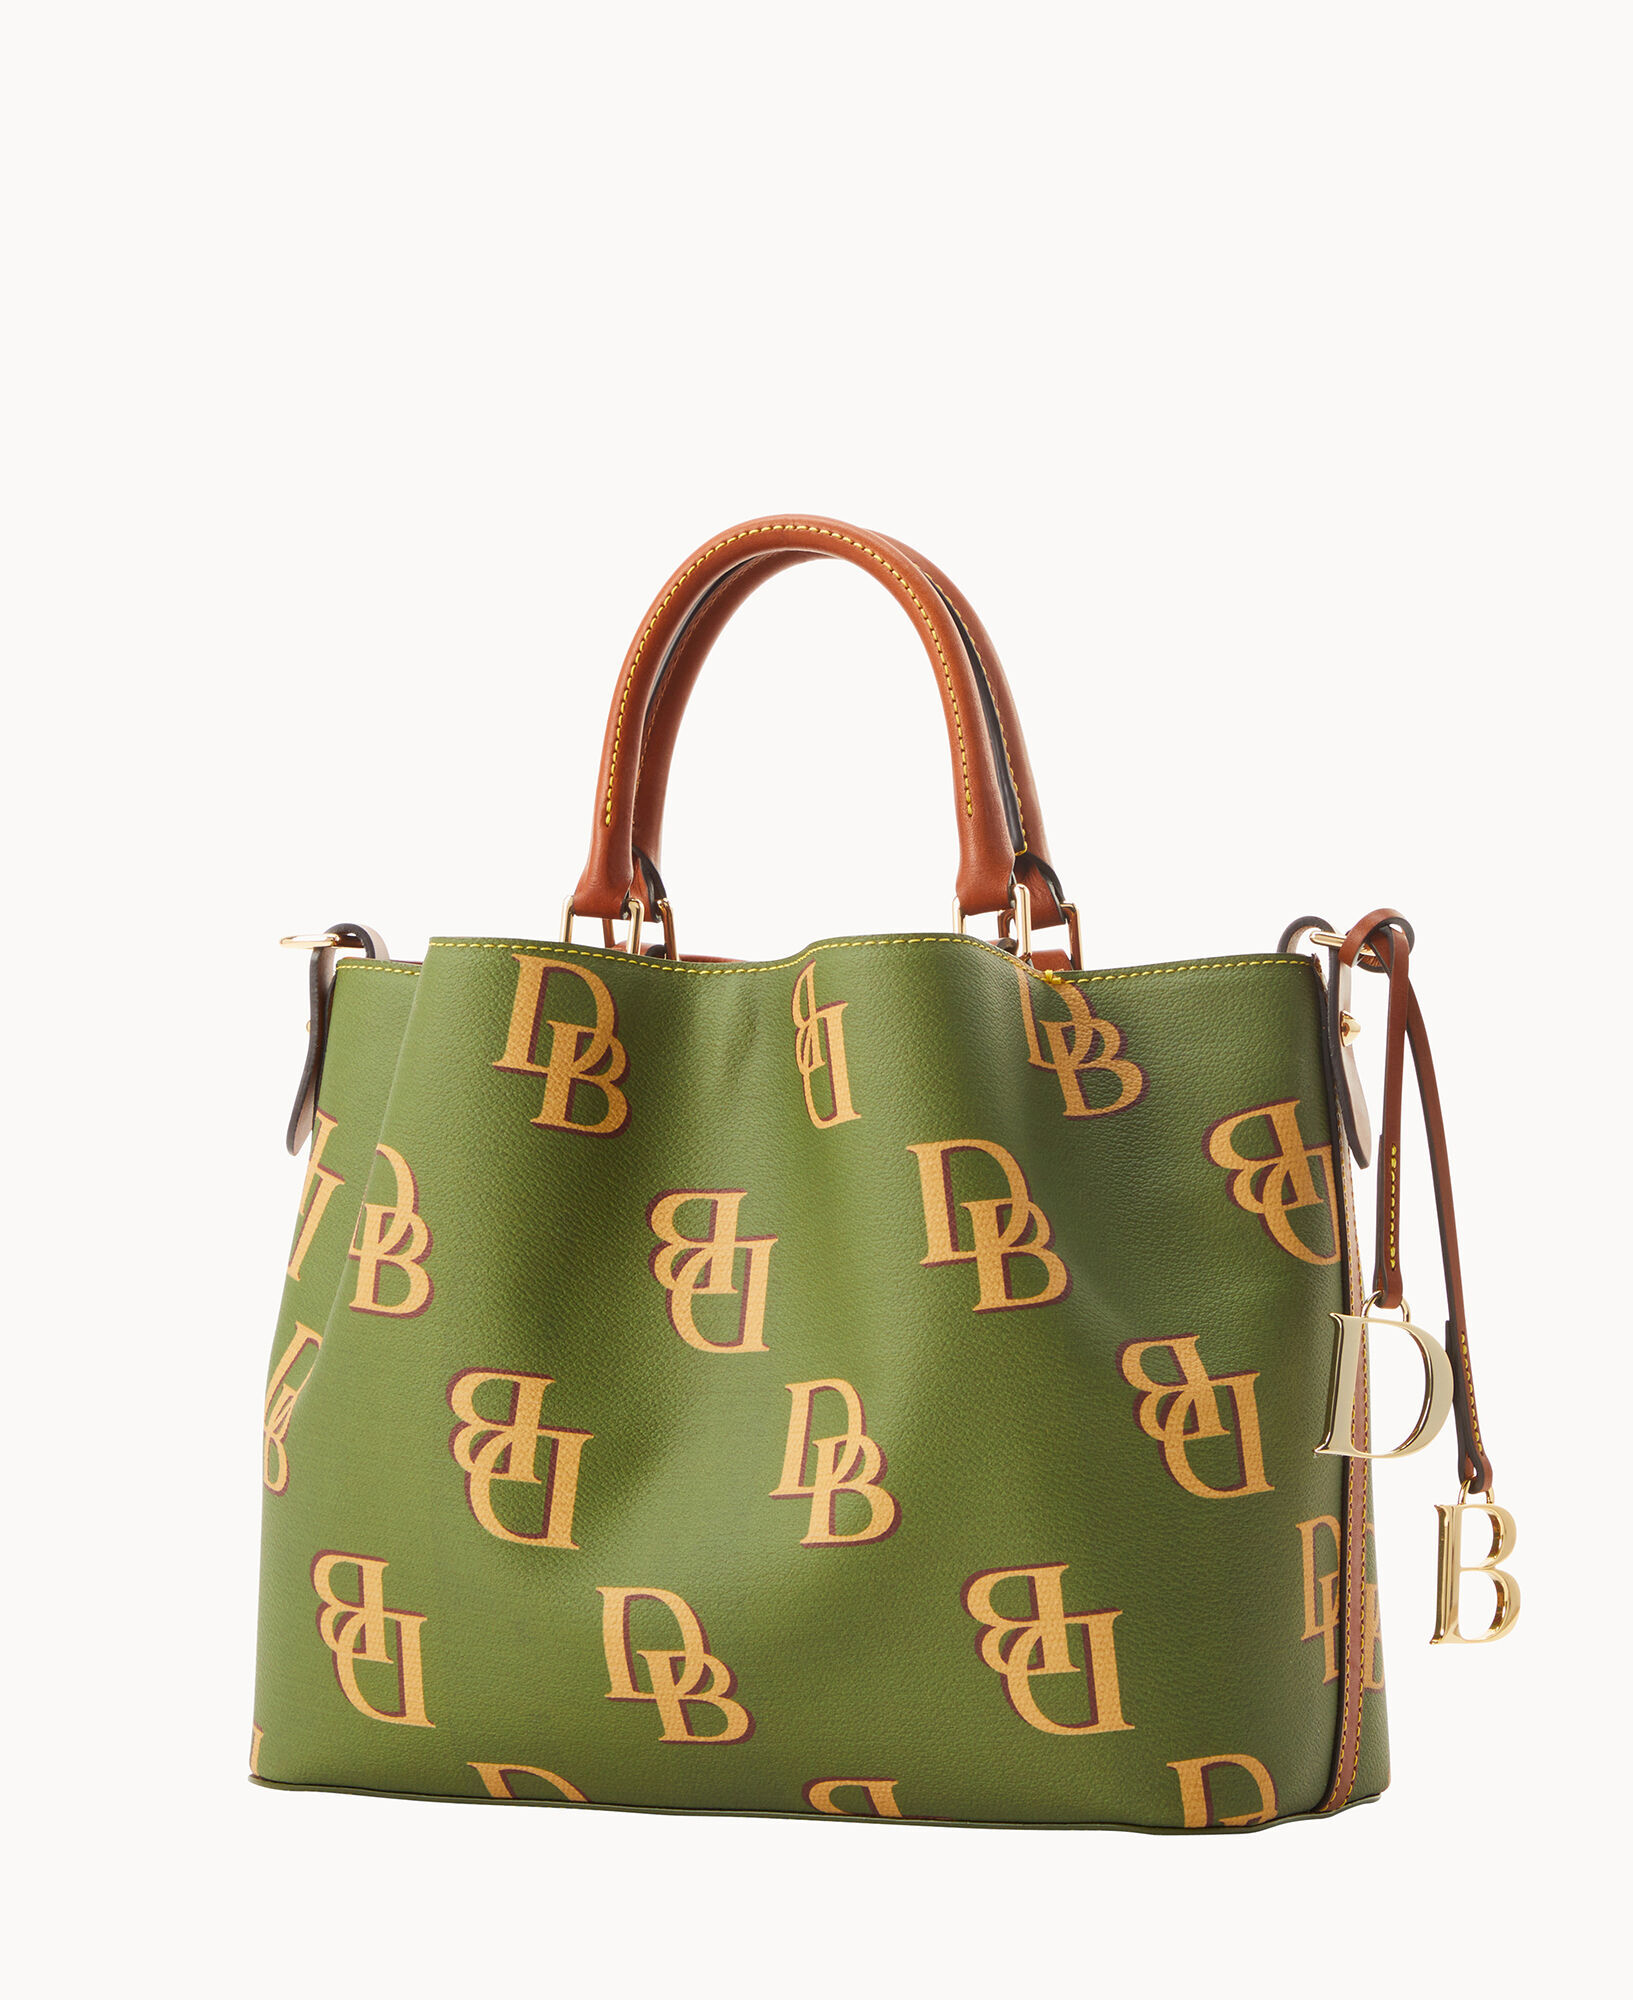 Louis Vuitton Satin Exterior Tote Bags & Handbags for Women